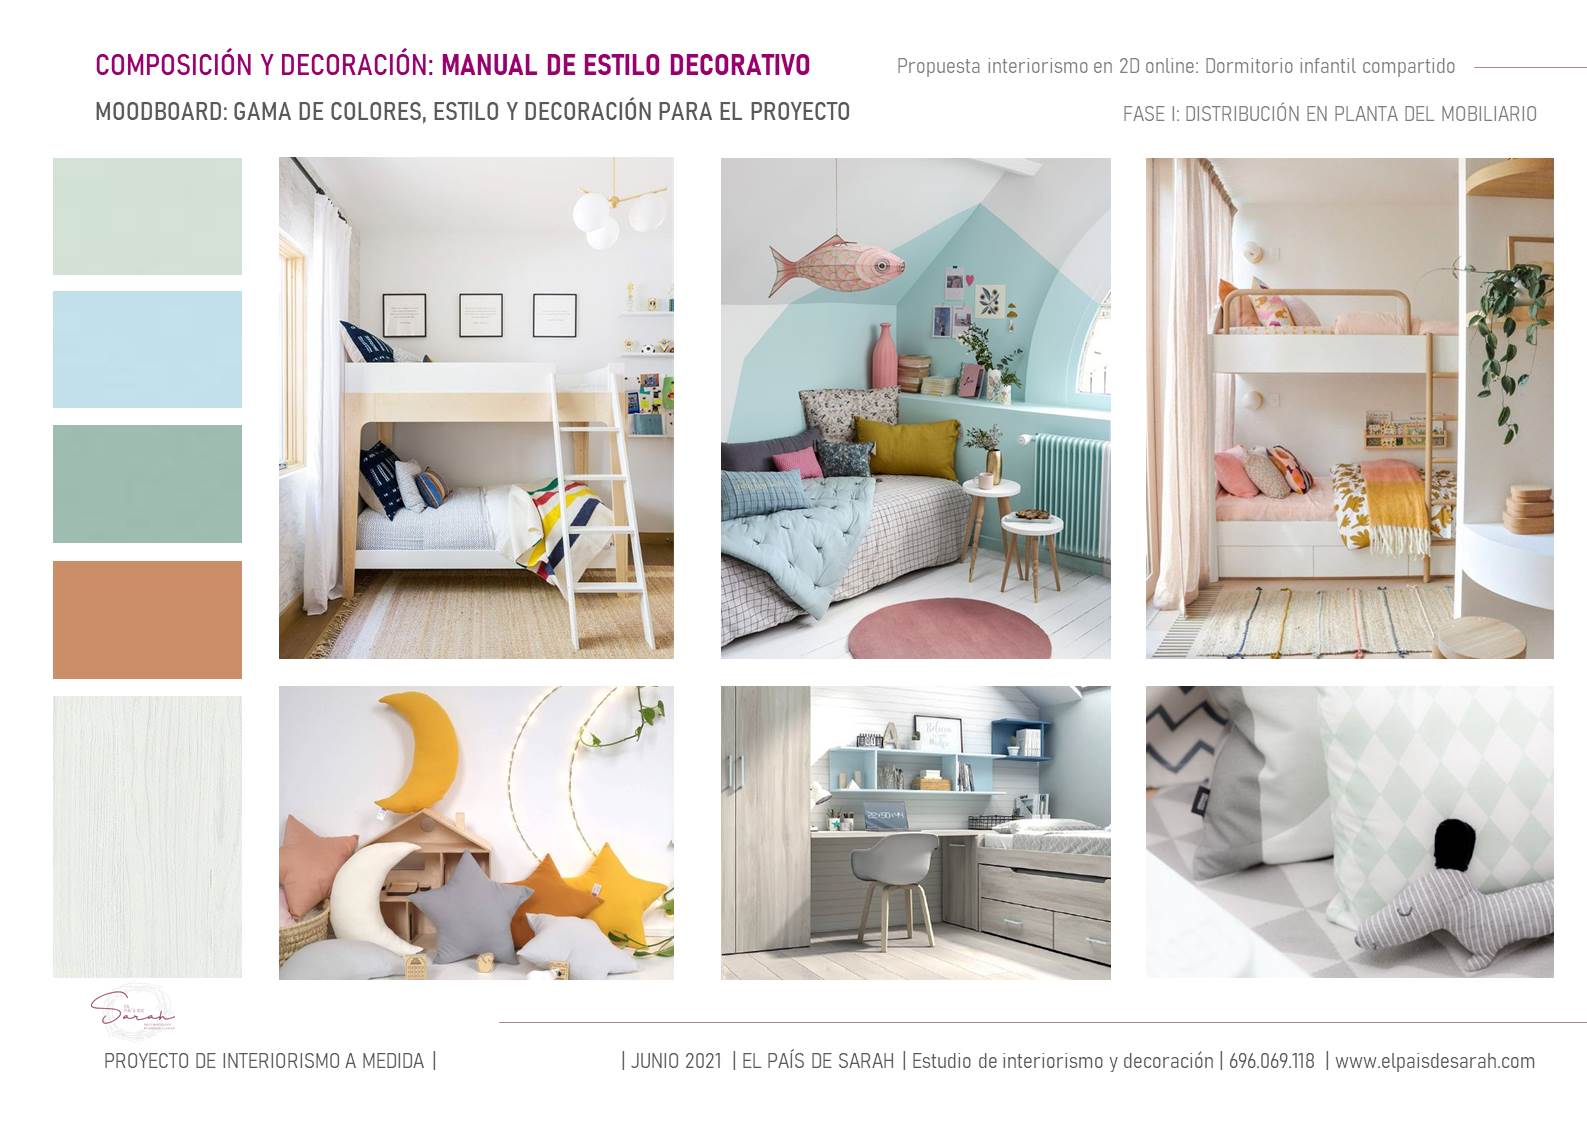 pre_proyecto_diseno_dormitorio_infantil_compartido_decoración_diseño_interiorismo-05